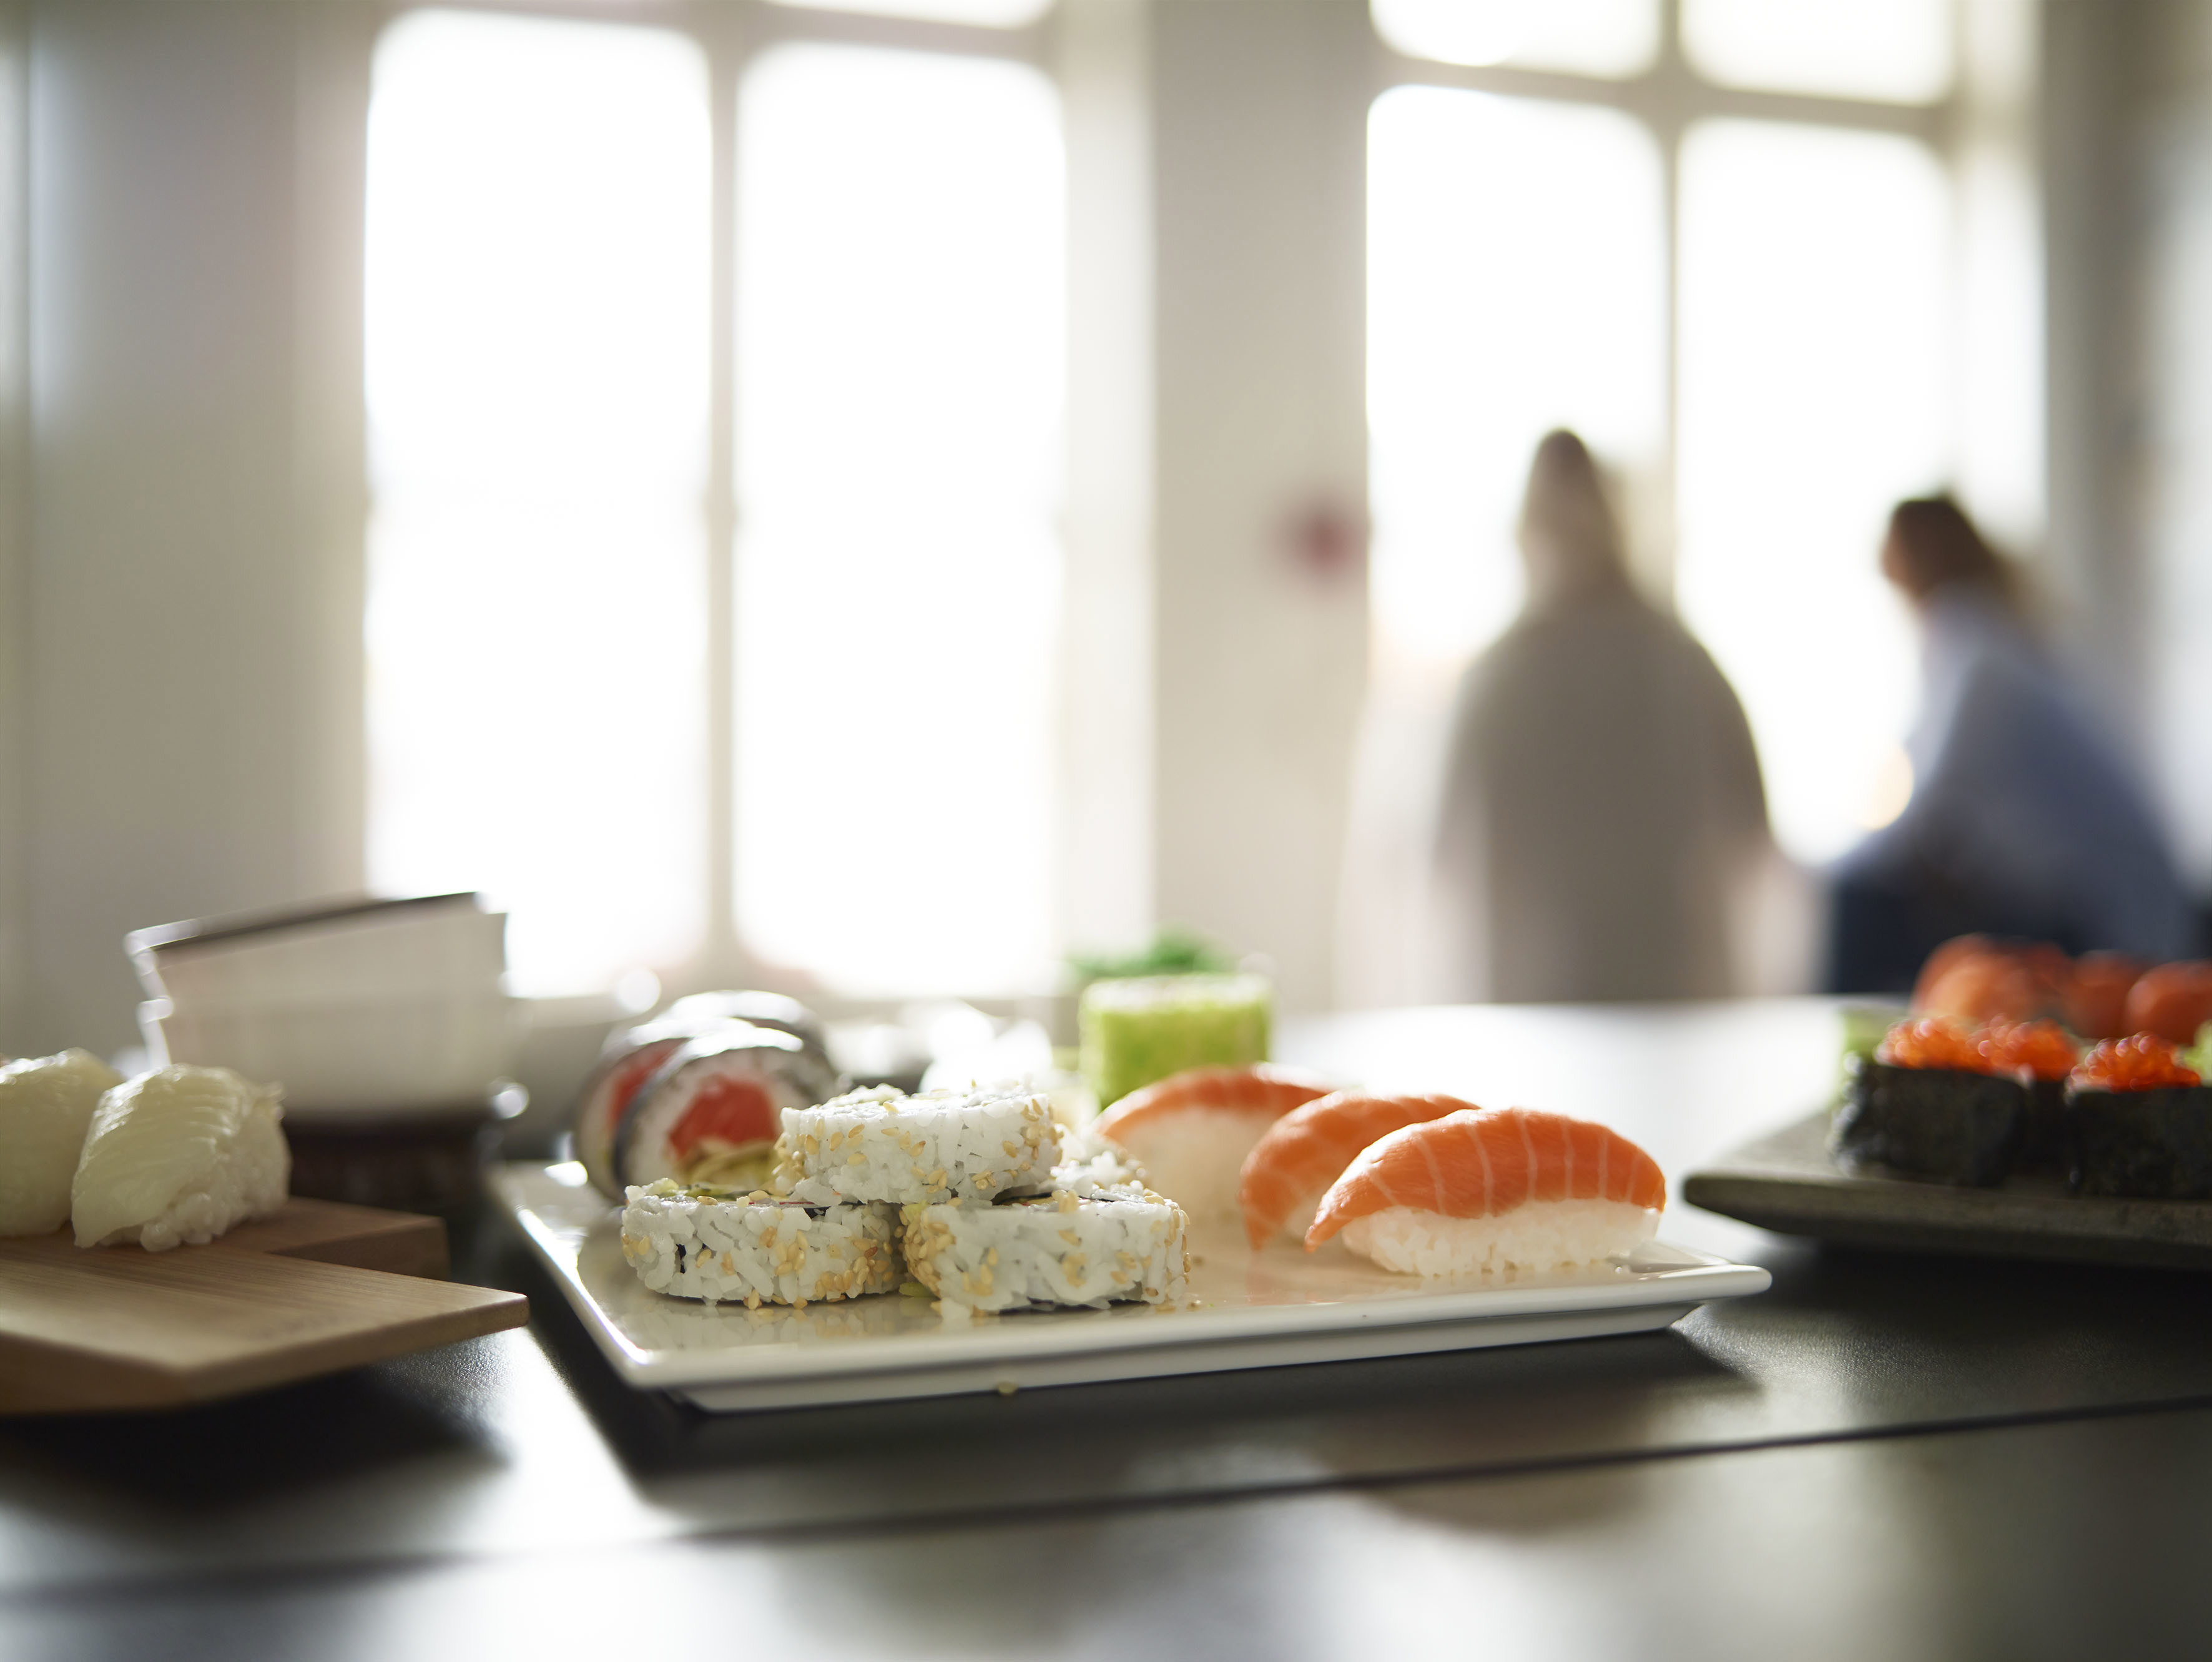 Fat med sushi varianter på bord